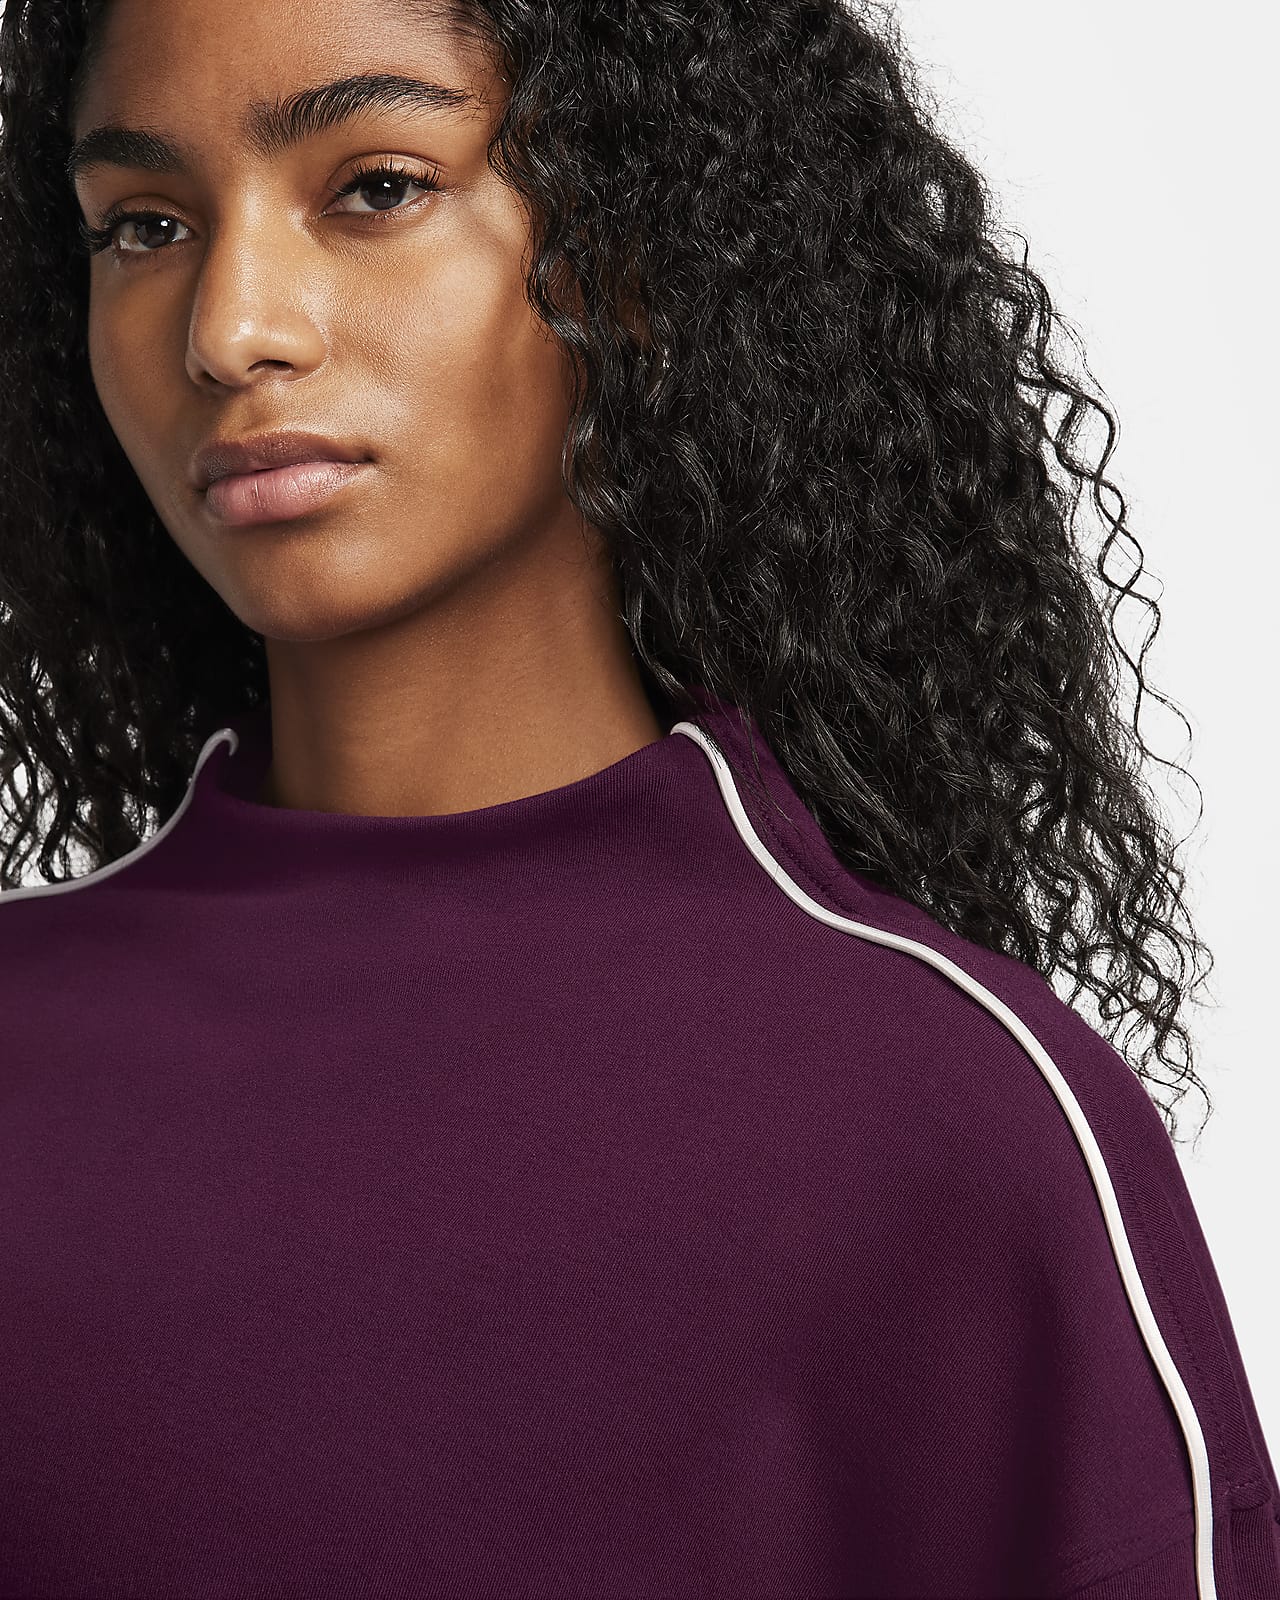 Nike Sportswear Collection Women's Mock-Neck Top